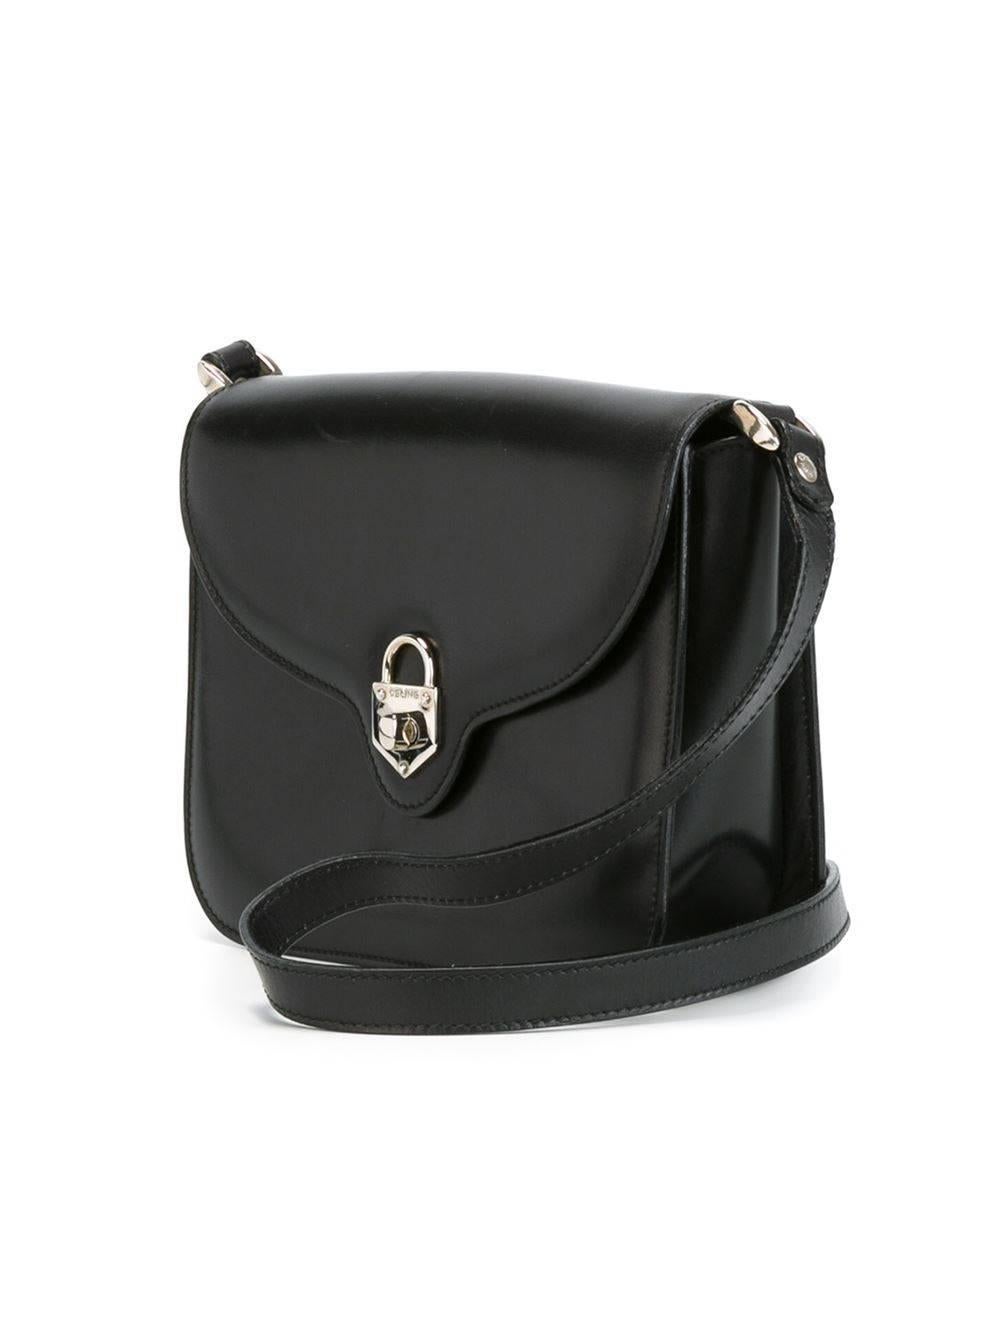 Black Celine Vintage Foldover Top Shoulder Bag